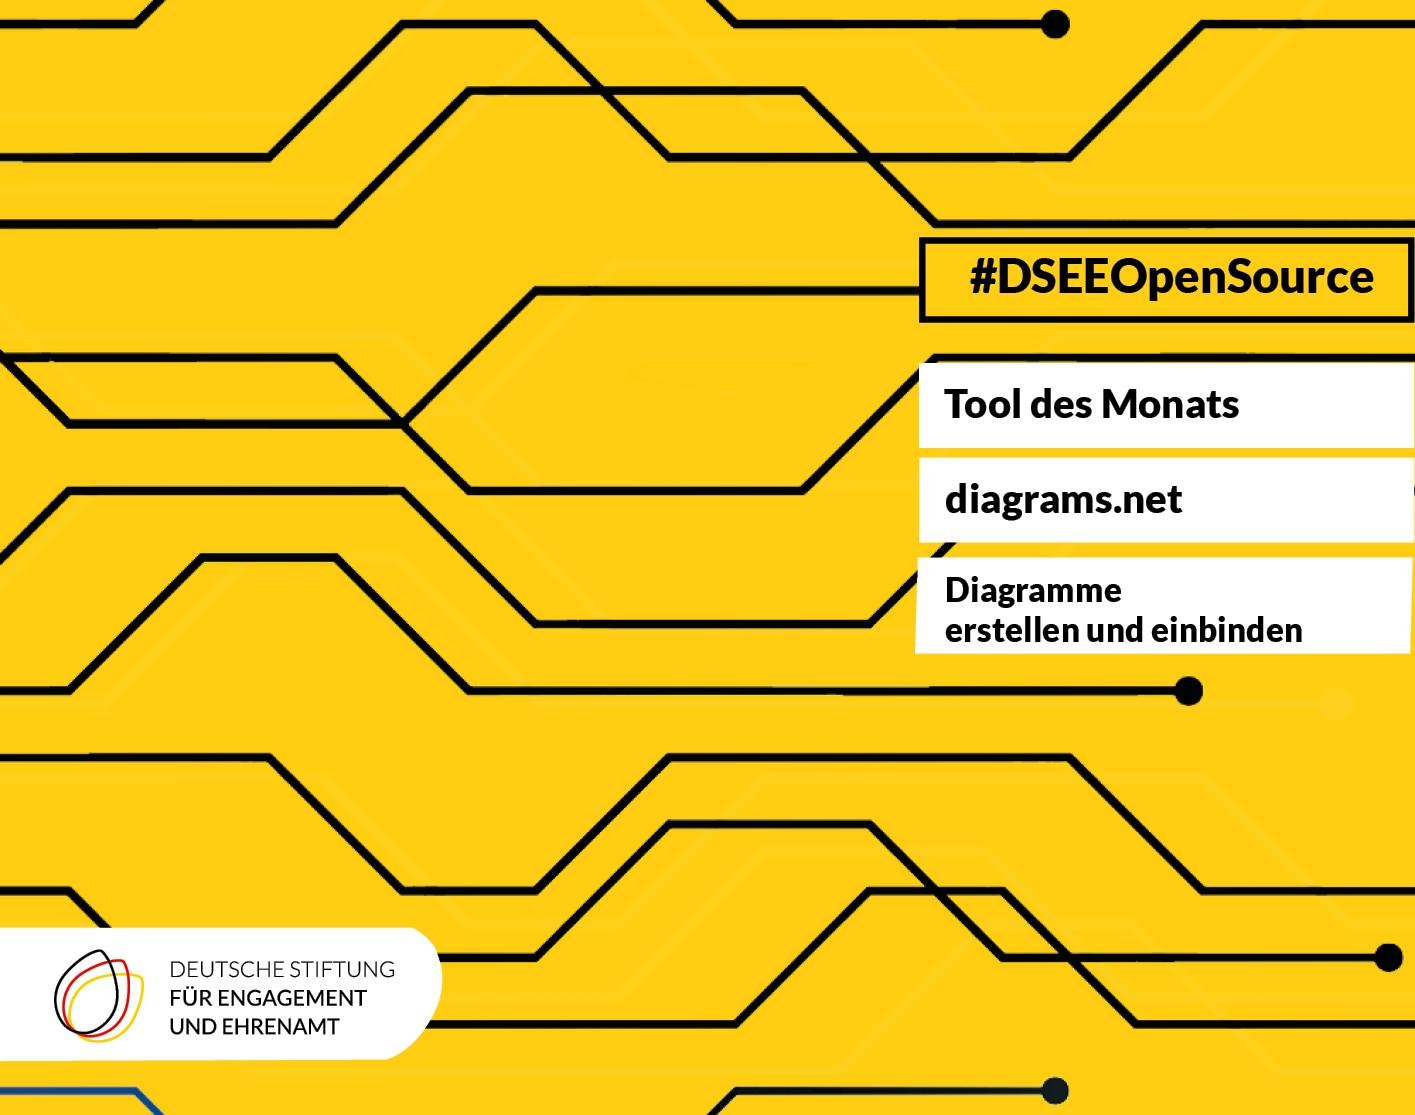 Abstrakte Grafik mit dem Logo der DSEE und dem Text: #DSEE Open Source: Tool des Monats: diagrams.net. Diagramme erstellen und einbinden